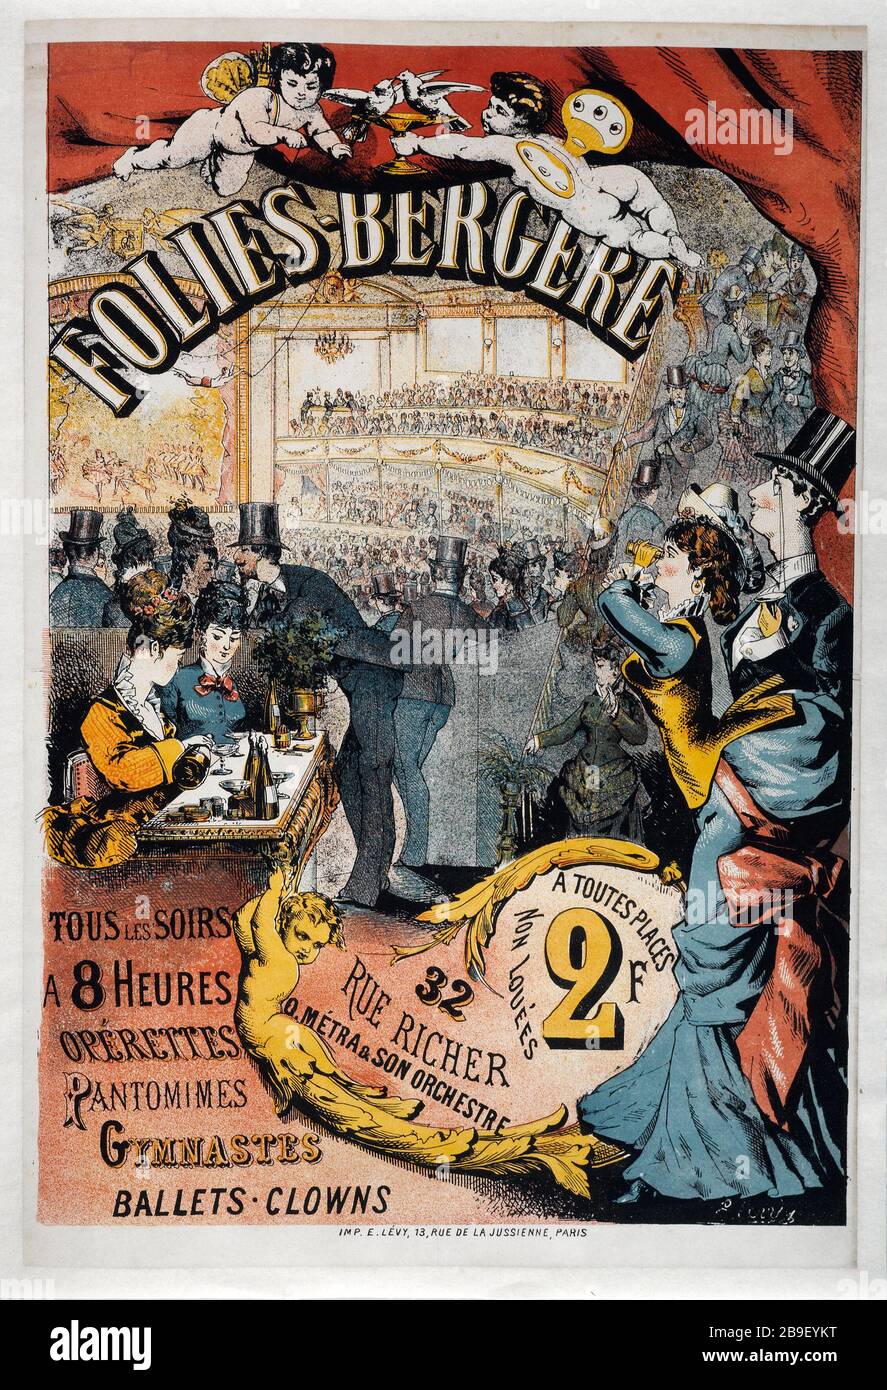 Folies-Bergere, todas LAS NOCHES Charles Lévy. Folies-Bergère, Tous les Soirs. Affiche. Lithographie couleur. París, musée Carnavalet. Foto de stock